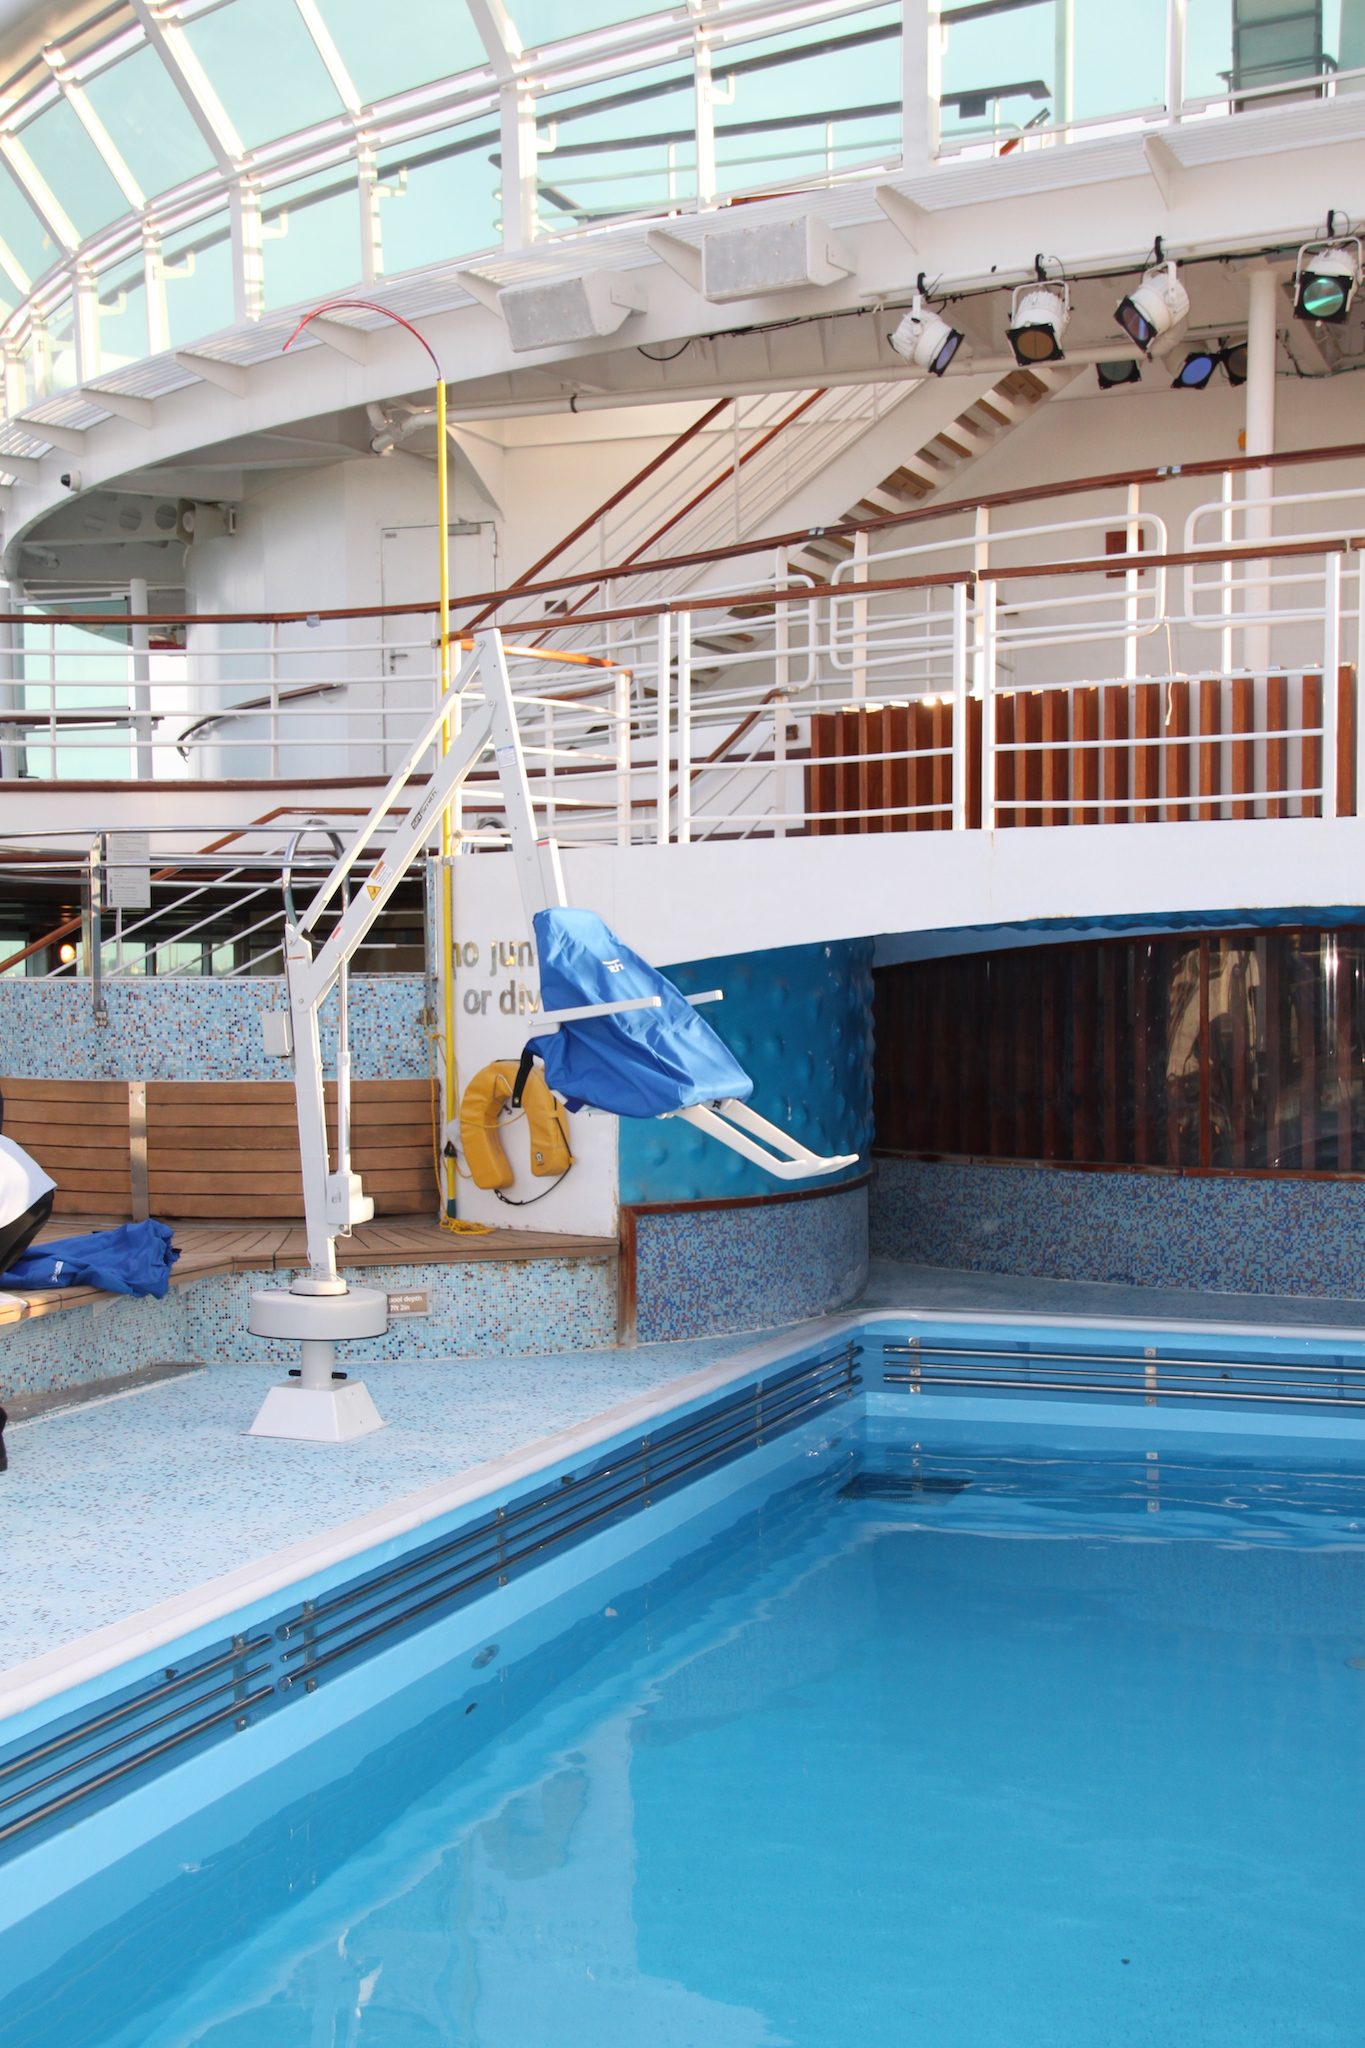 splash-pool-hoist-cruise-liner.JPG